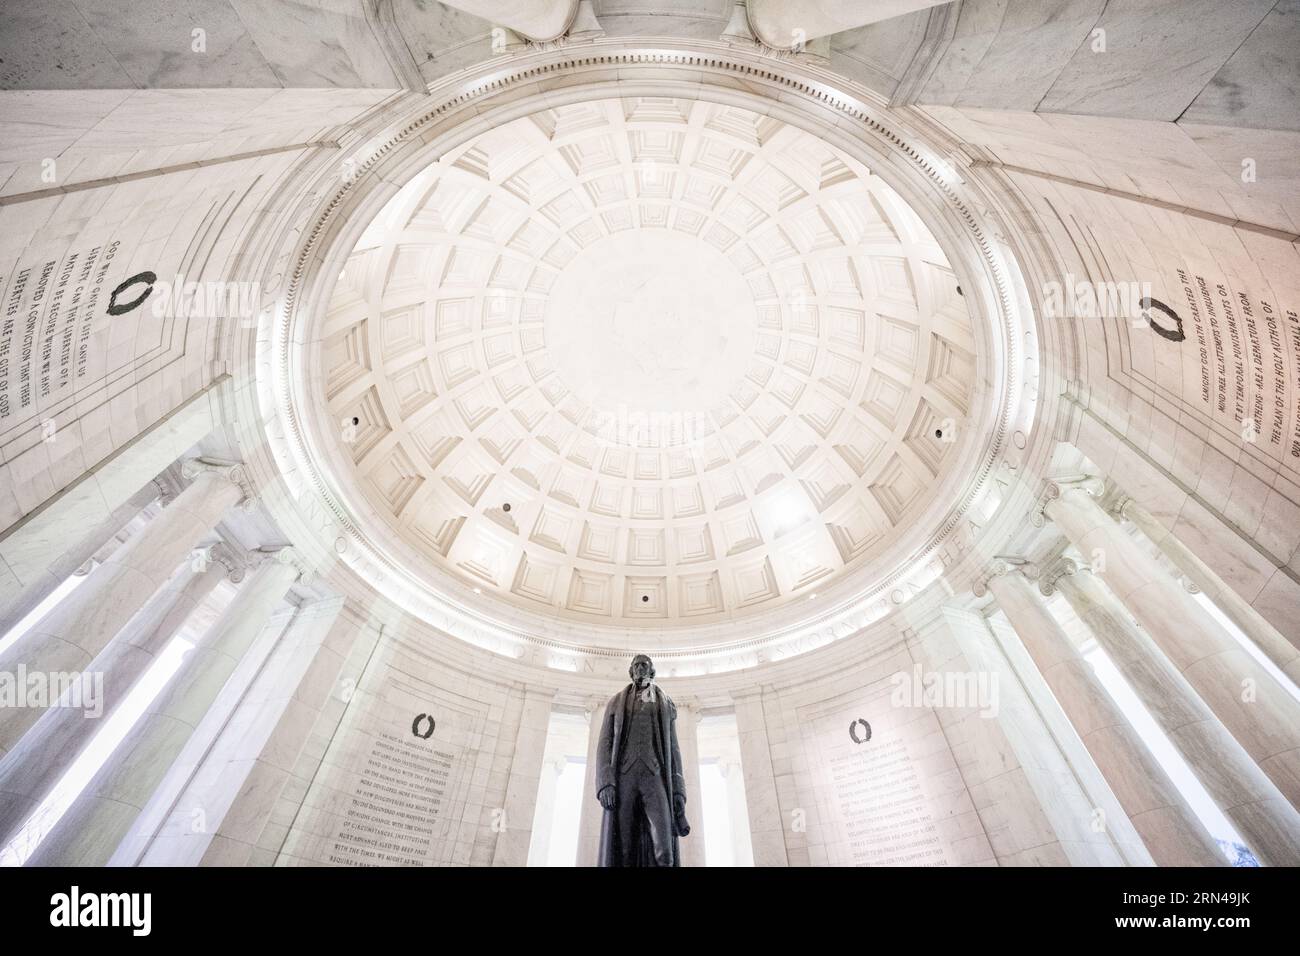 WASHINGTON DC, États-Unis — le Jefferson Memorial est un hommage emblématique au troisième président américain, Thomas Jefferson. Surplombant le Tidal Basin, ce monument néoclassique témoigne de la contribution de Jefferson aux principes fondateurs de la nation. Banque D'Images